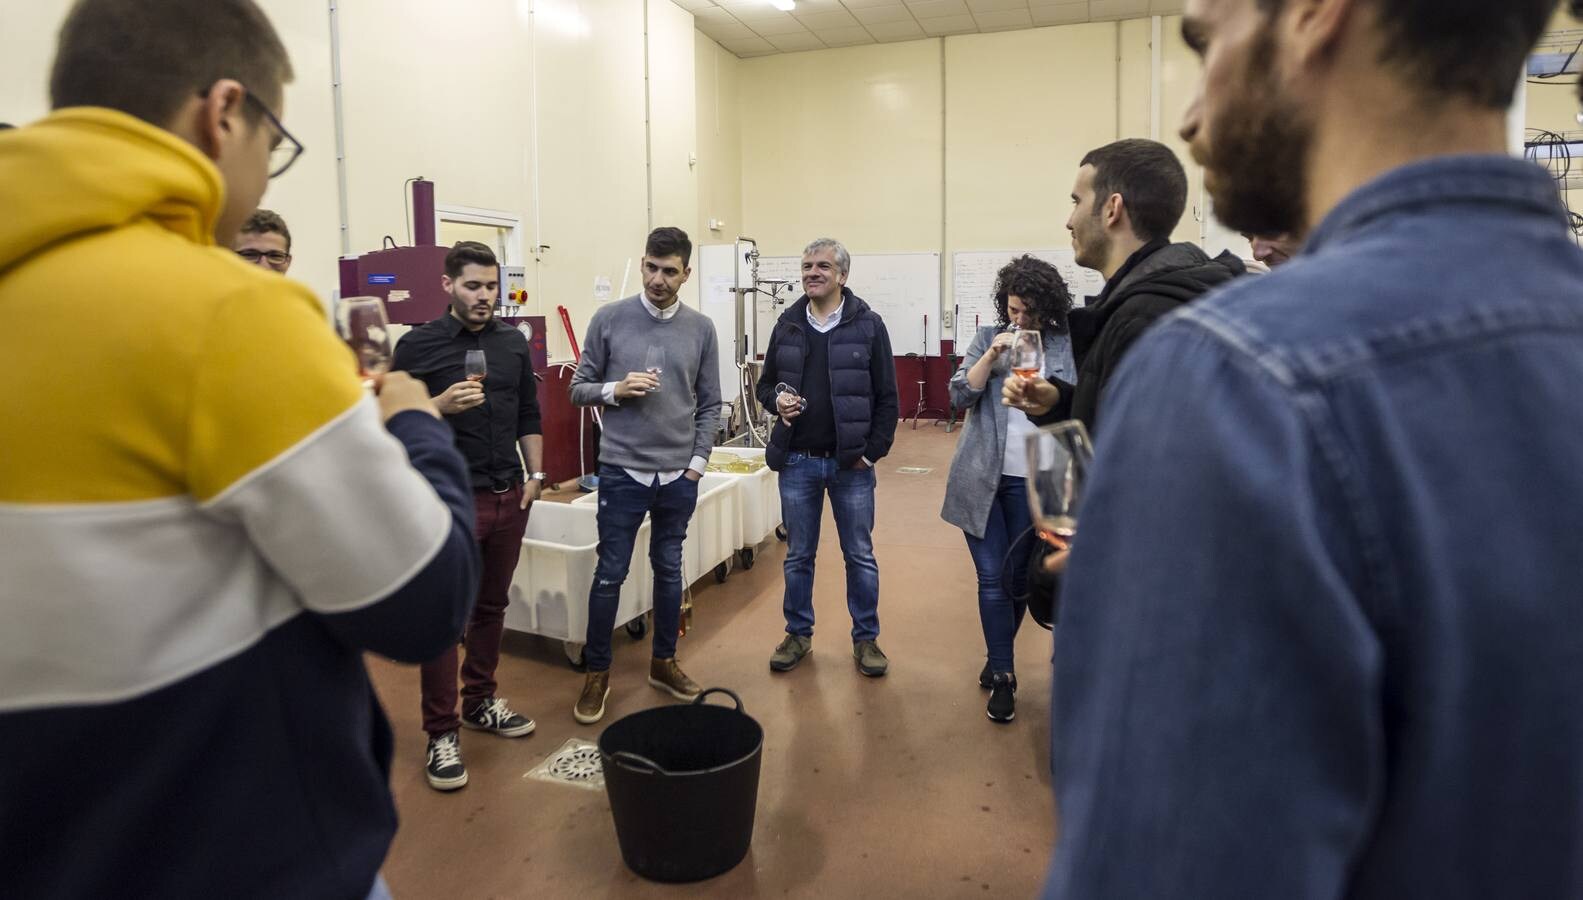 Diecisiete jóvenes de muy diversas procedencias aprenden a elaborar sus primeros vinos en la bodega universitaria del grado de Enología